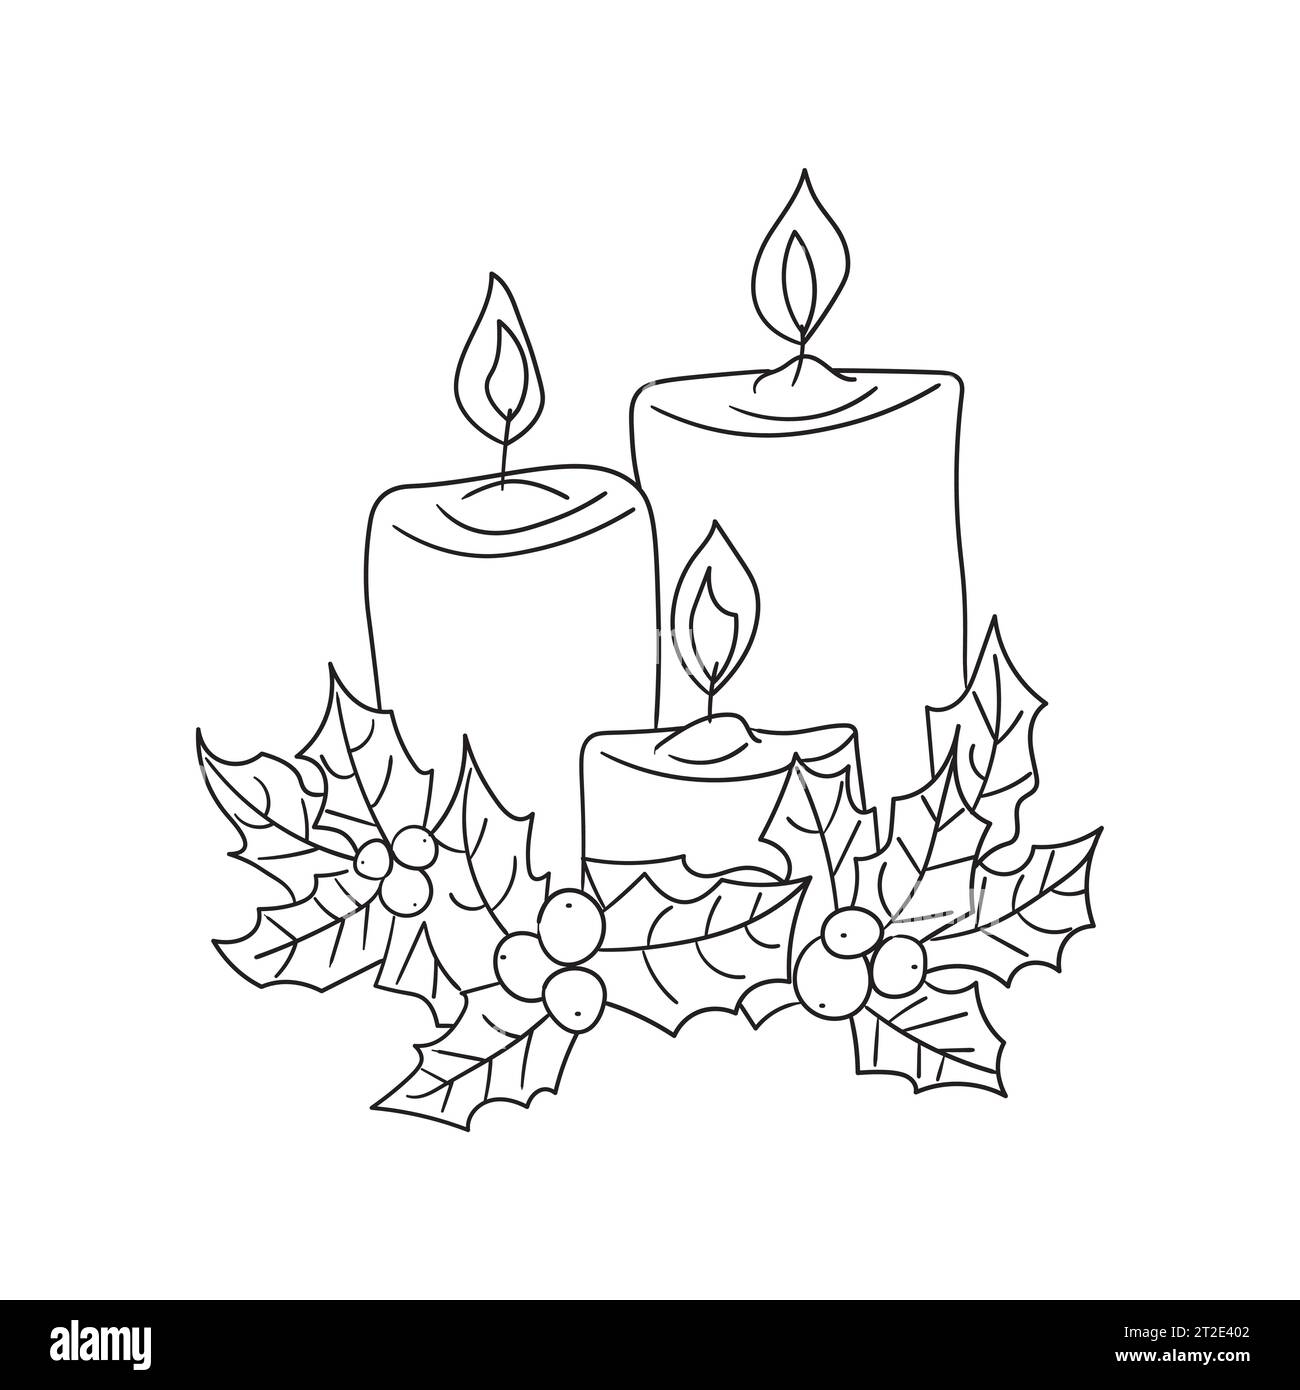 Kerzen und stechpalme-Vektor-lineare Illustration. Gliederung. Ein paar Kerzen und das immergrüne Weihnachtssymbol der stechpalme Stock Vektor